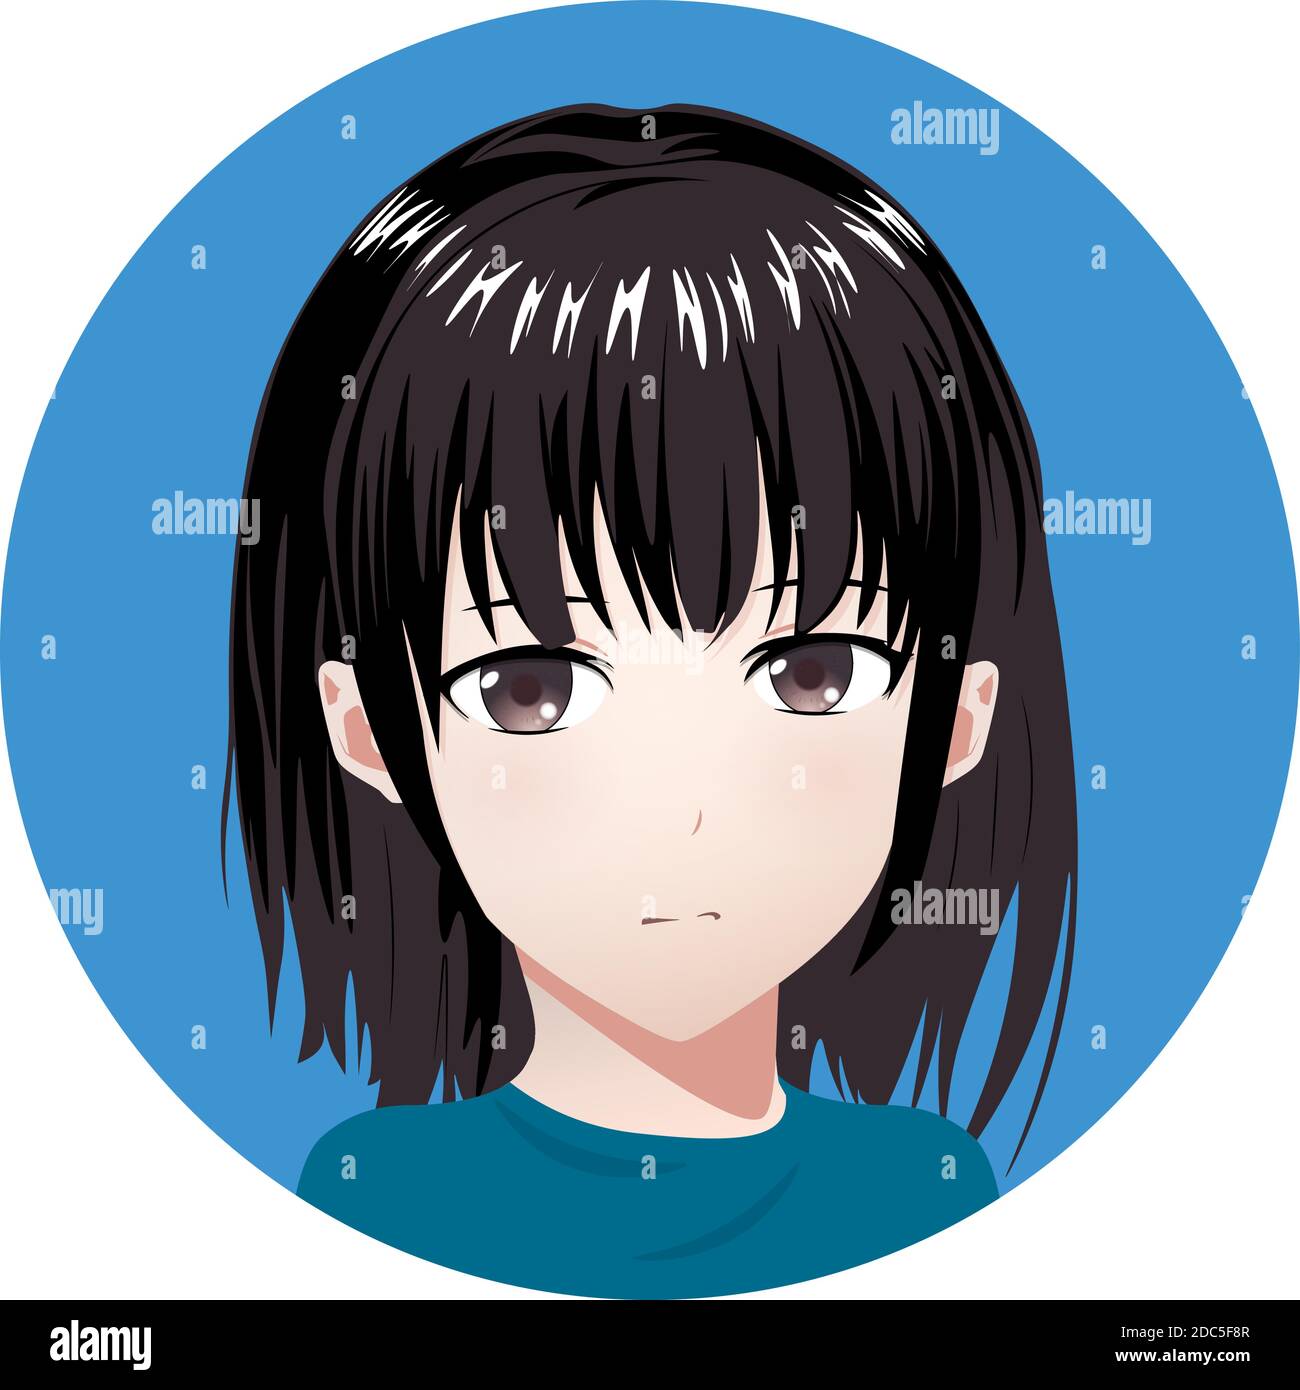 𝑆𝑎𝑣𝑒 : 𝐹𝑜𝑙𝑙𝑜𝑤 𝑚𝑒.•❤︎ | Anime girl short hair, Girl short hair,  Digital art anime